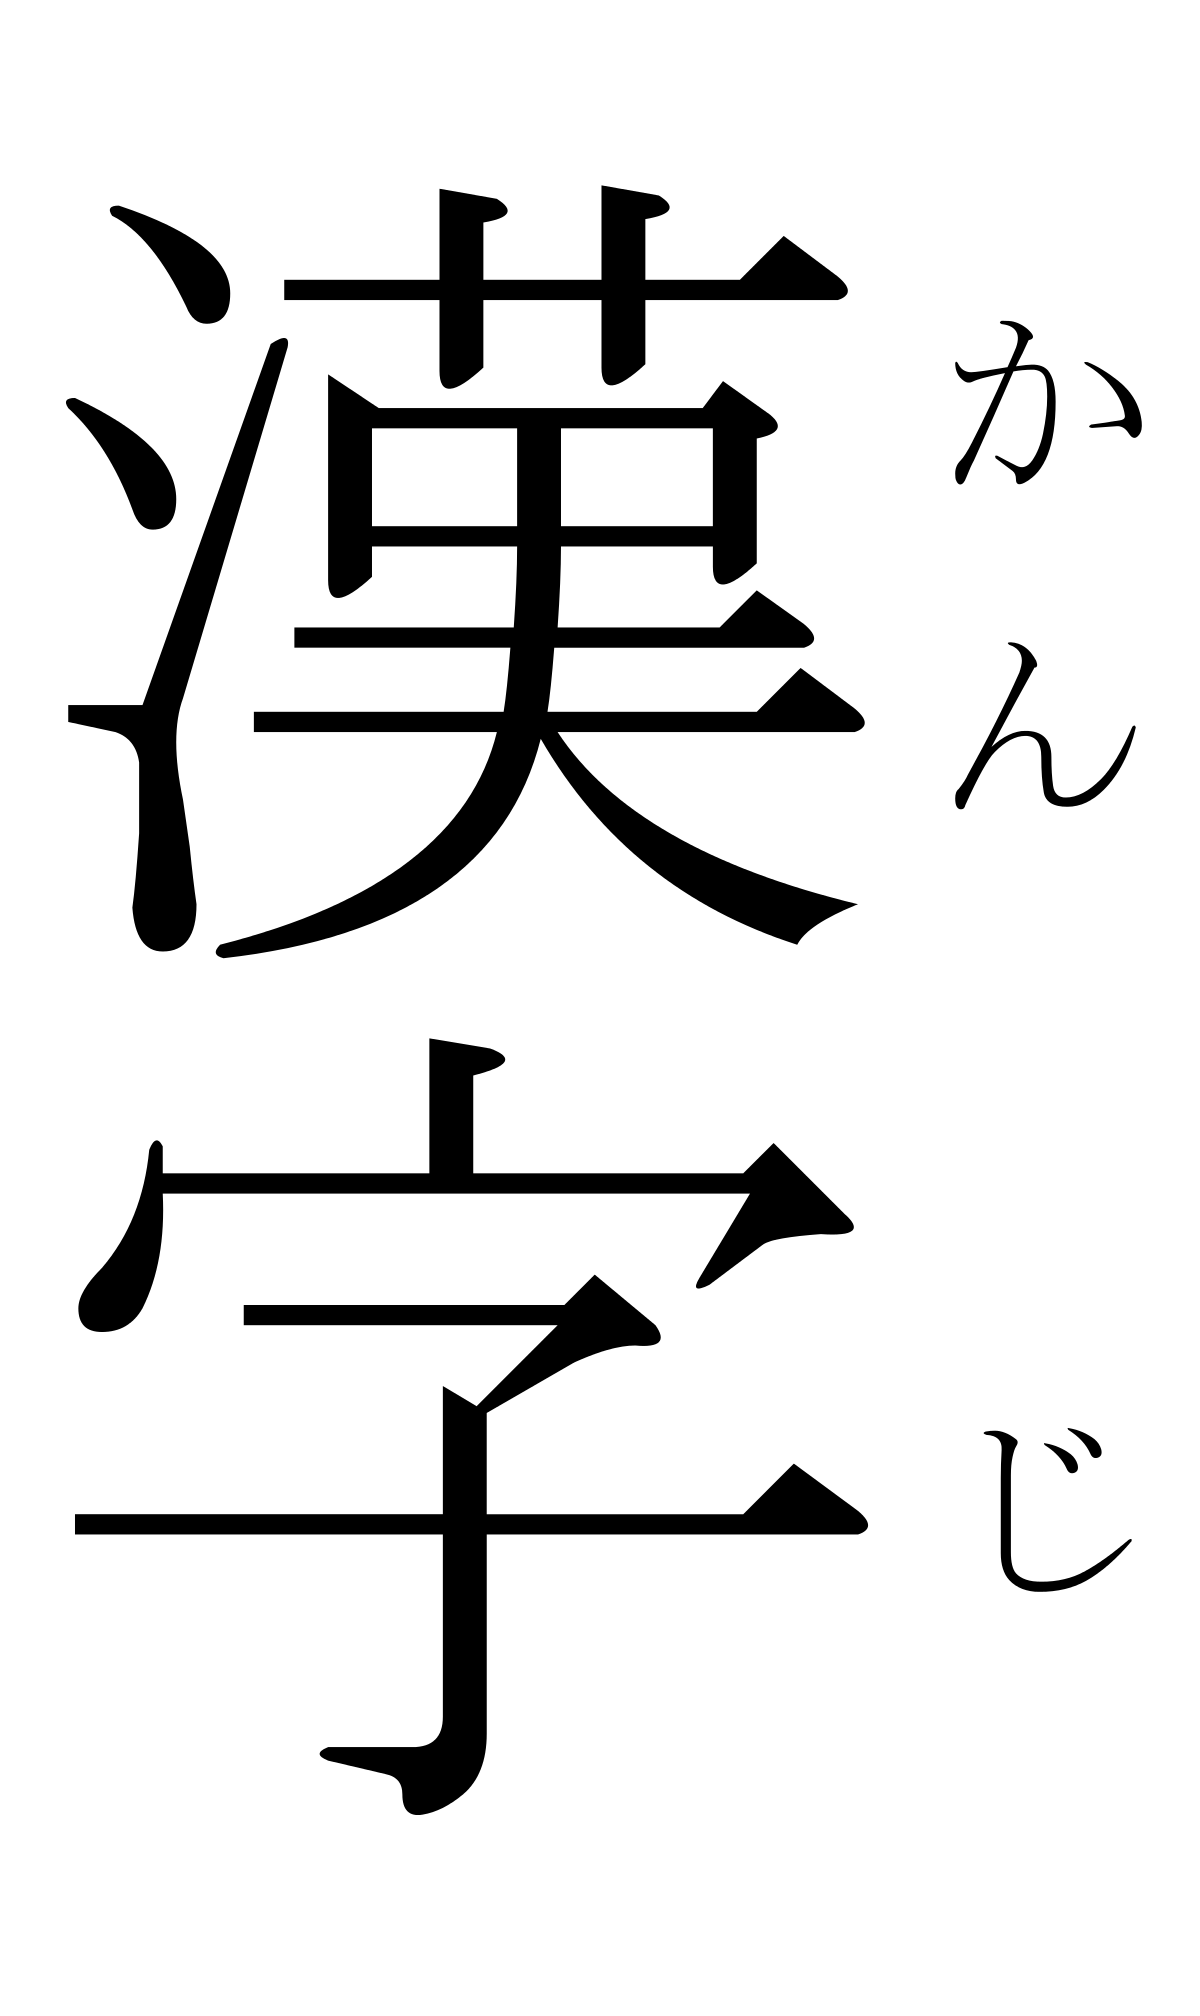 Kanji - Grade 12 - Quizizz